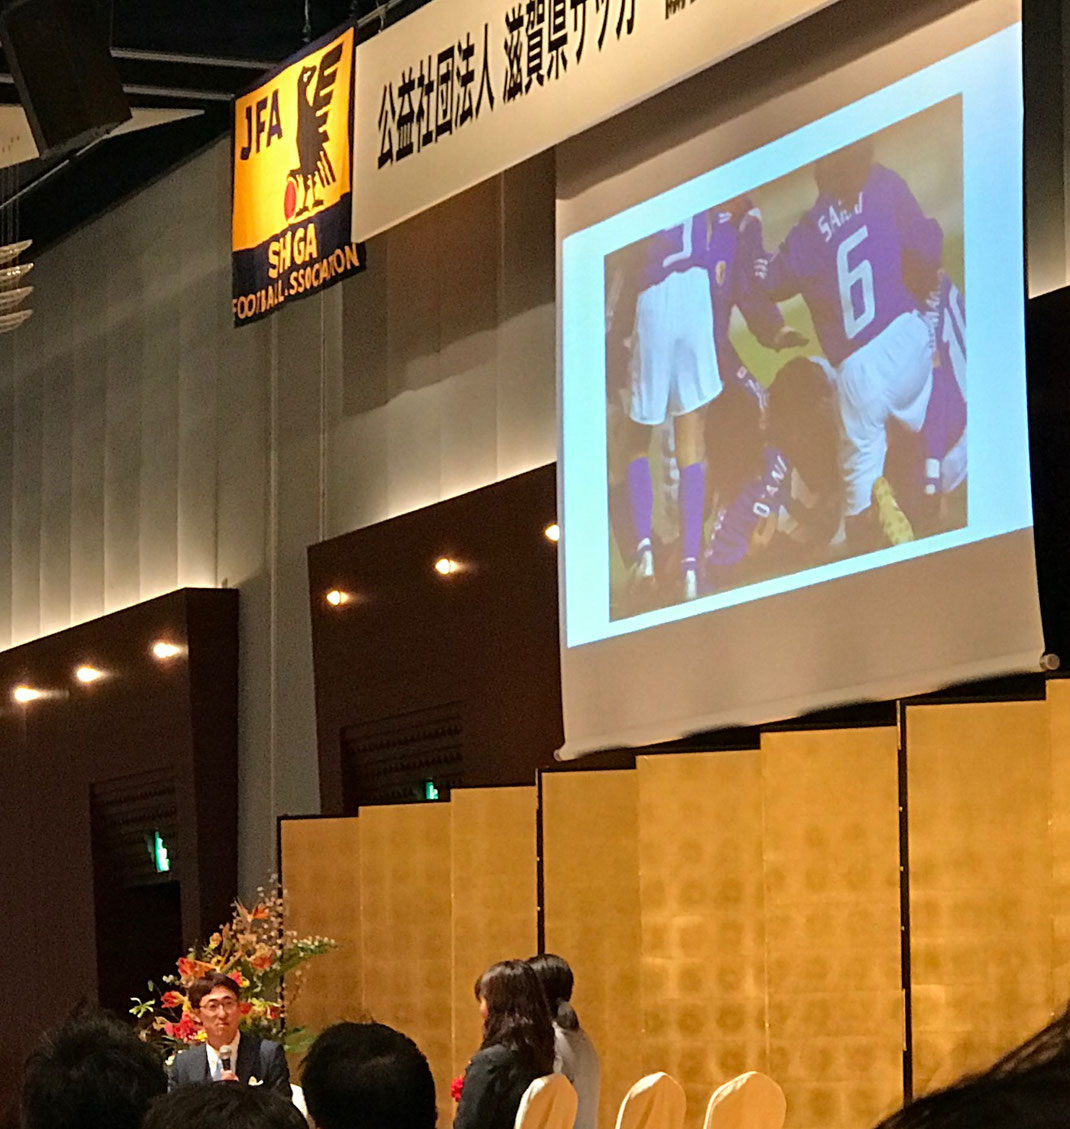 滋賀県サッカー協会70周年記念式典 滋賀県湖南市で活動する菩提寺サッカースポーツ少年団のwebサイトです